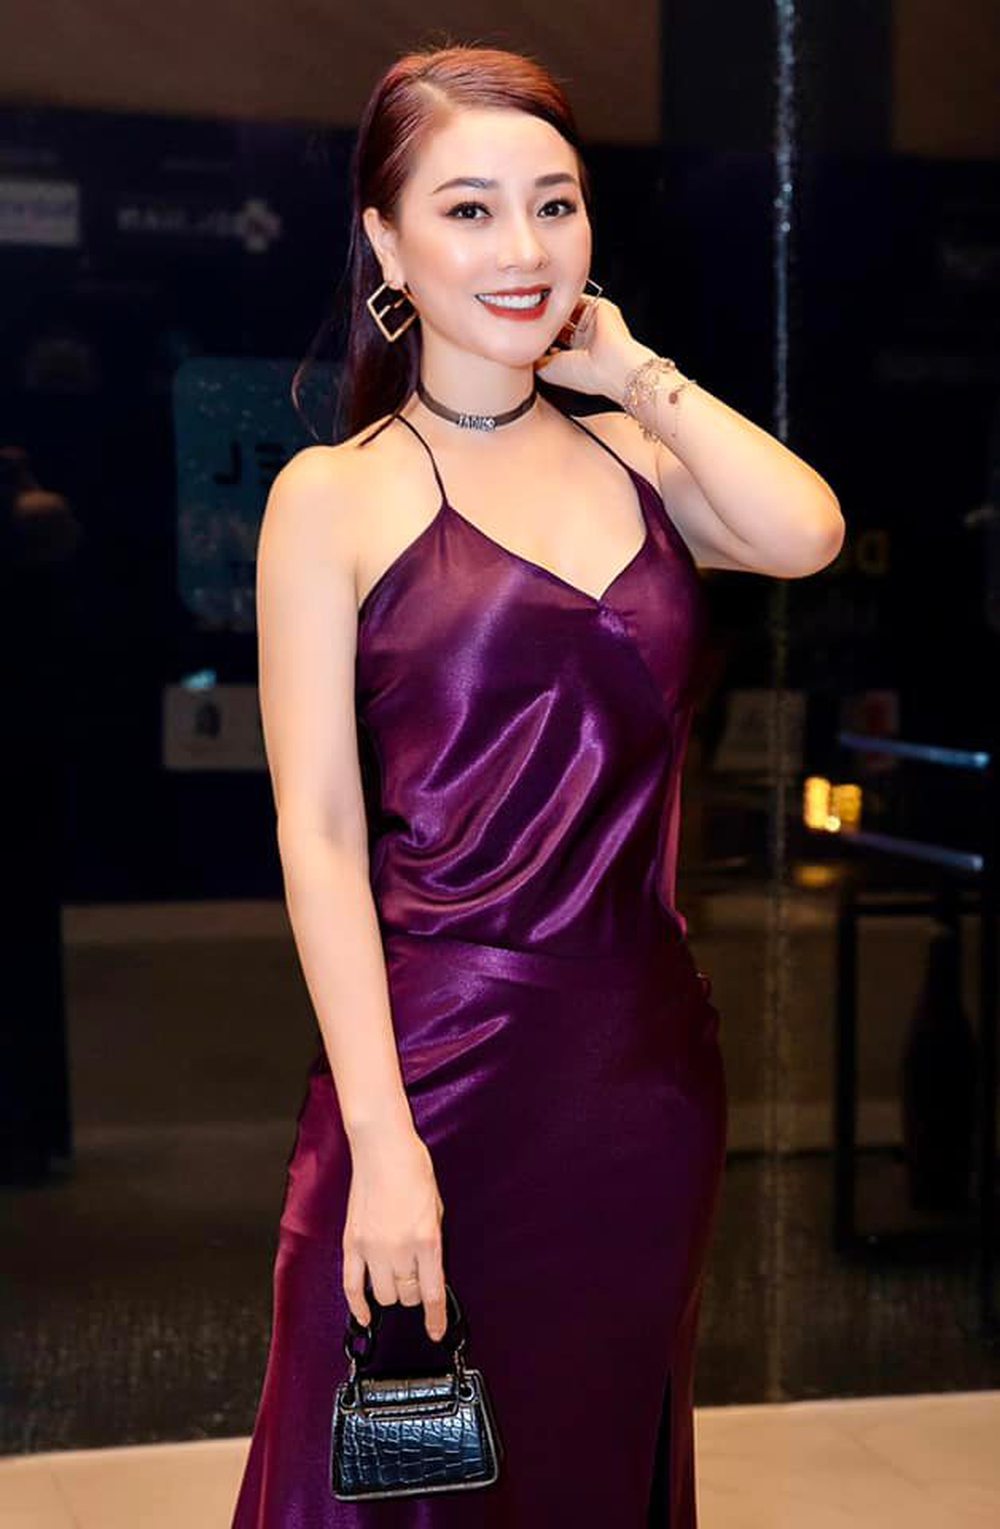 Hoa hậu Quý bà Hoàng Yến sau 13 năm đăng quang: Cuộc sống sung túc, U50 như gái đôi mươi - ảnh 8